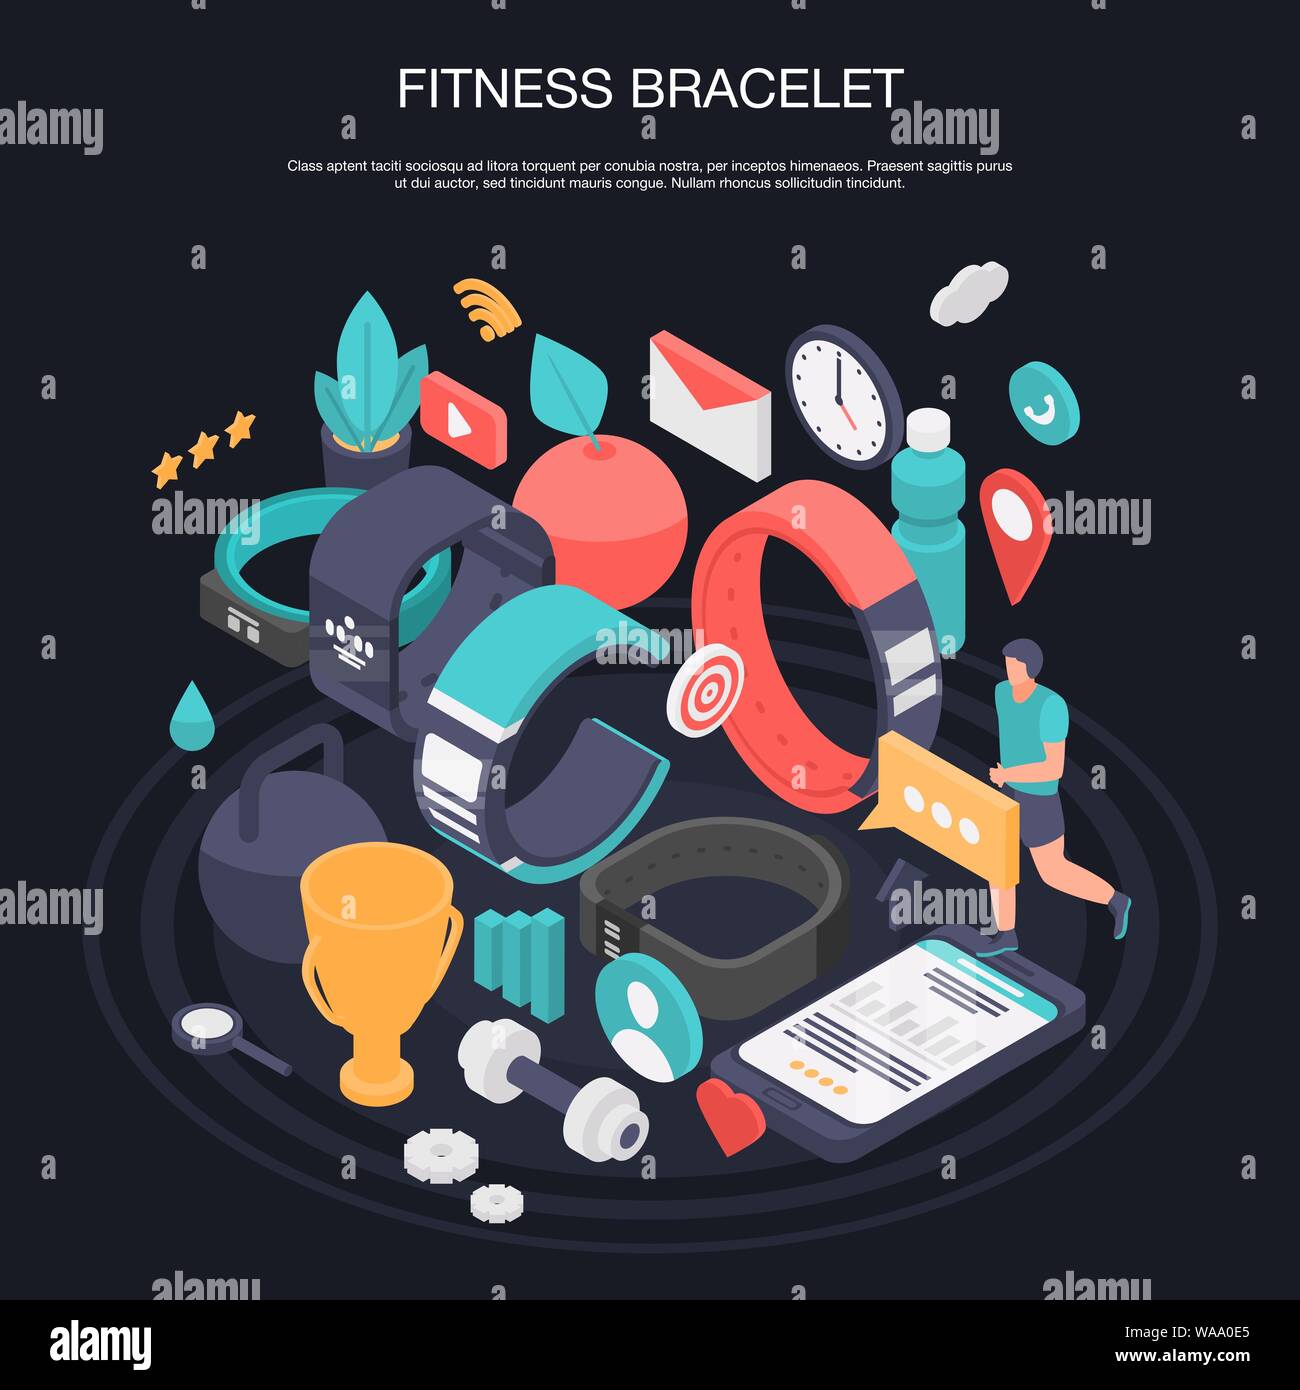 Smart fitness bracelet concept banner, isometric style Stock Vector